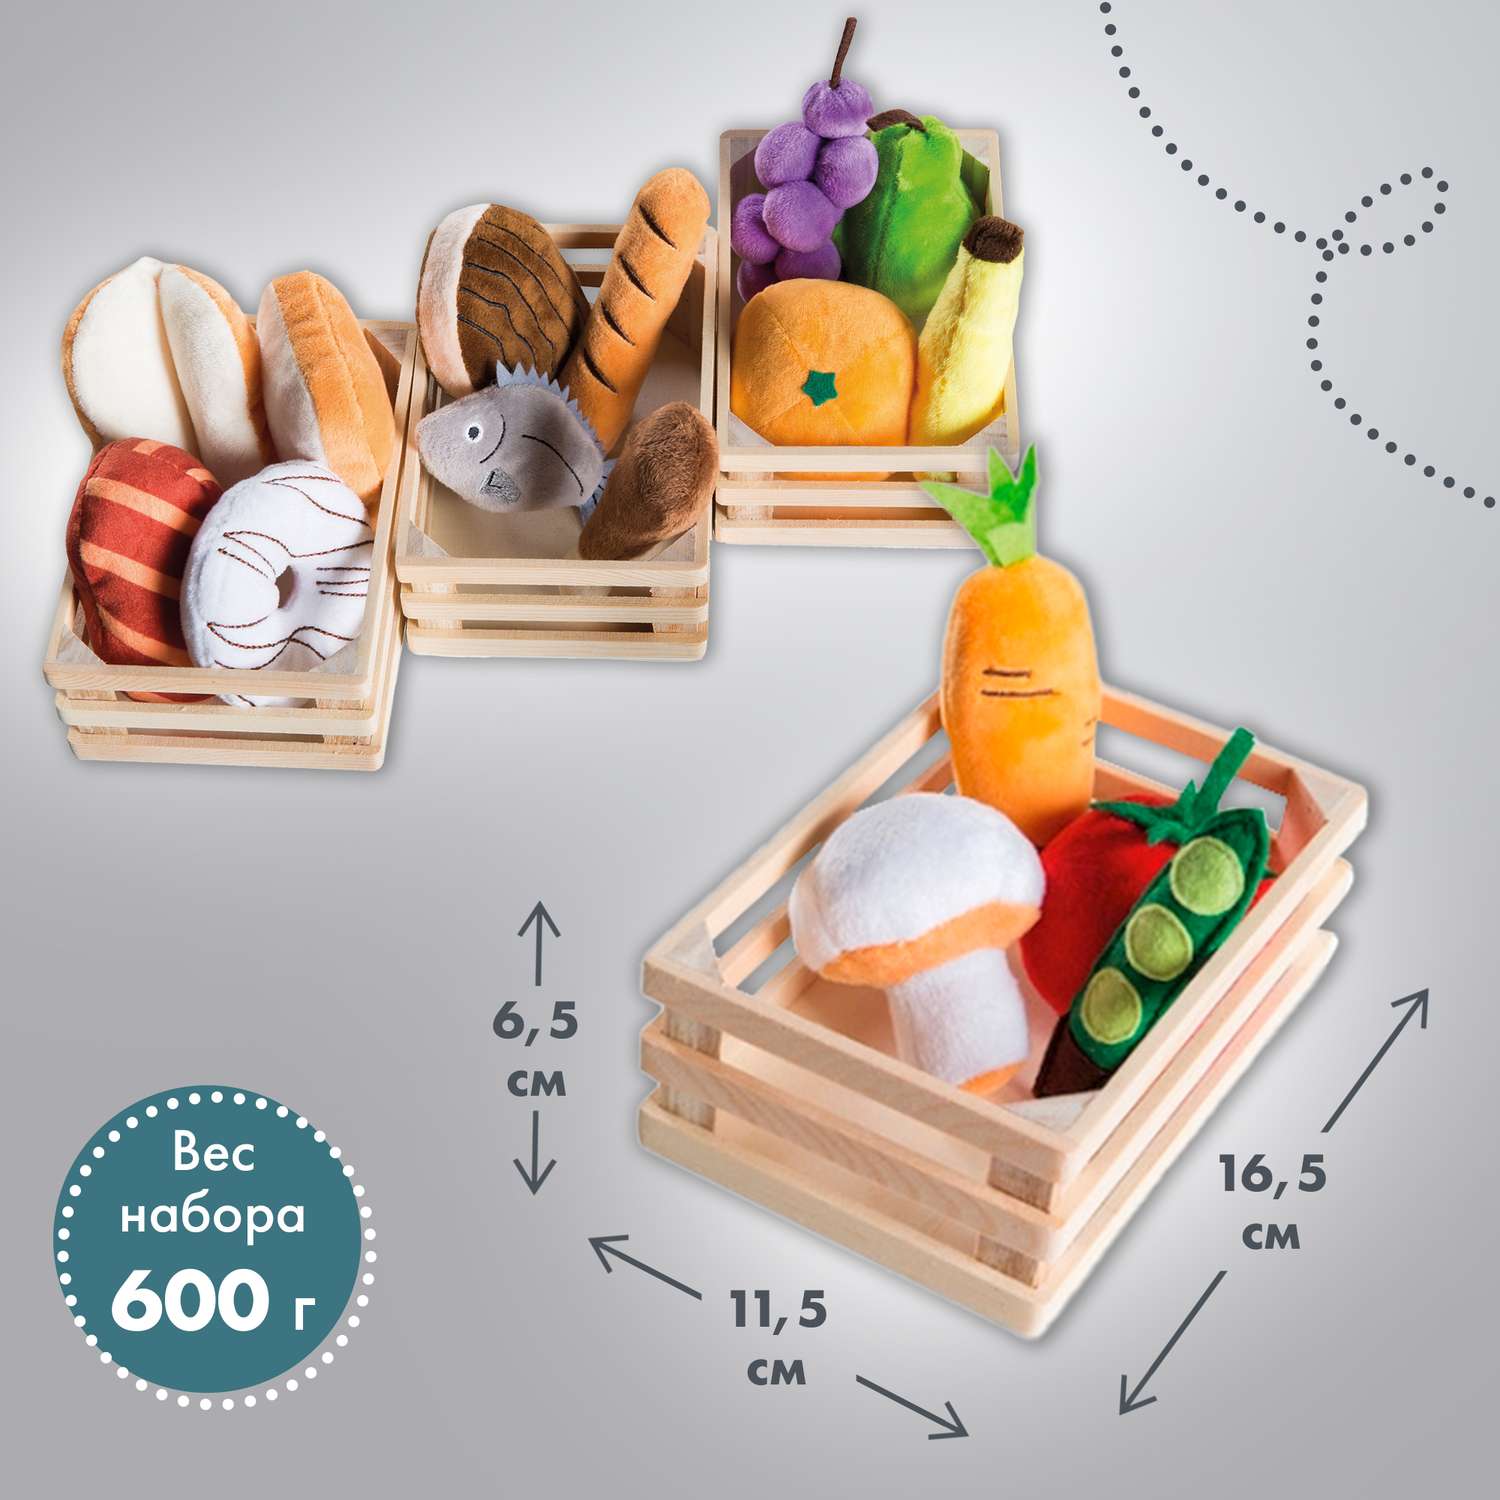 Набор плюшевых продуктов Roba игровой для детского магазина или кухни 98145 - фото 13